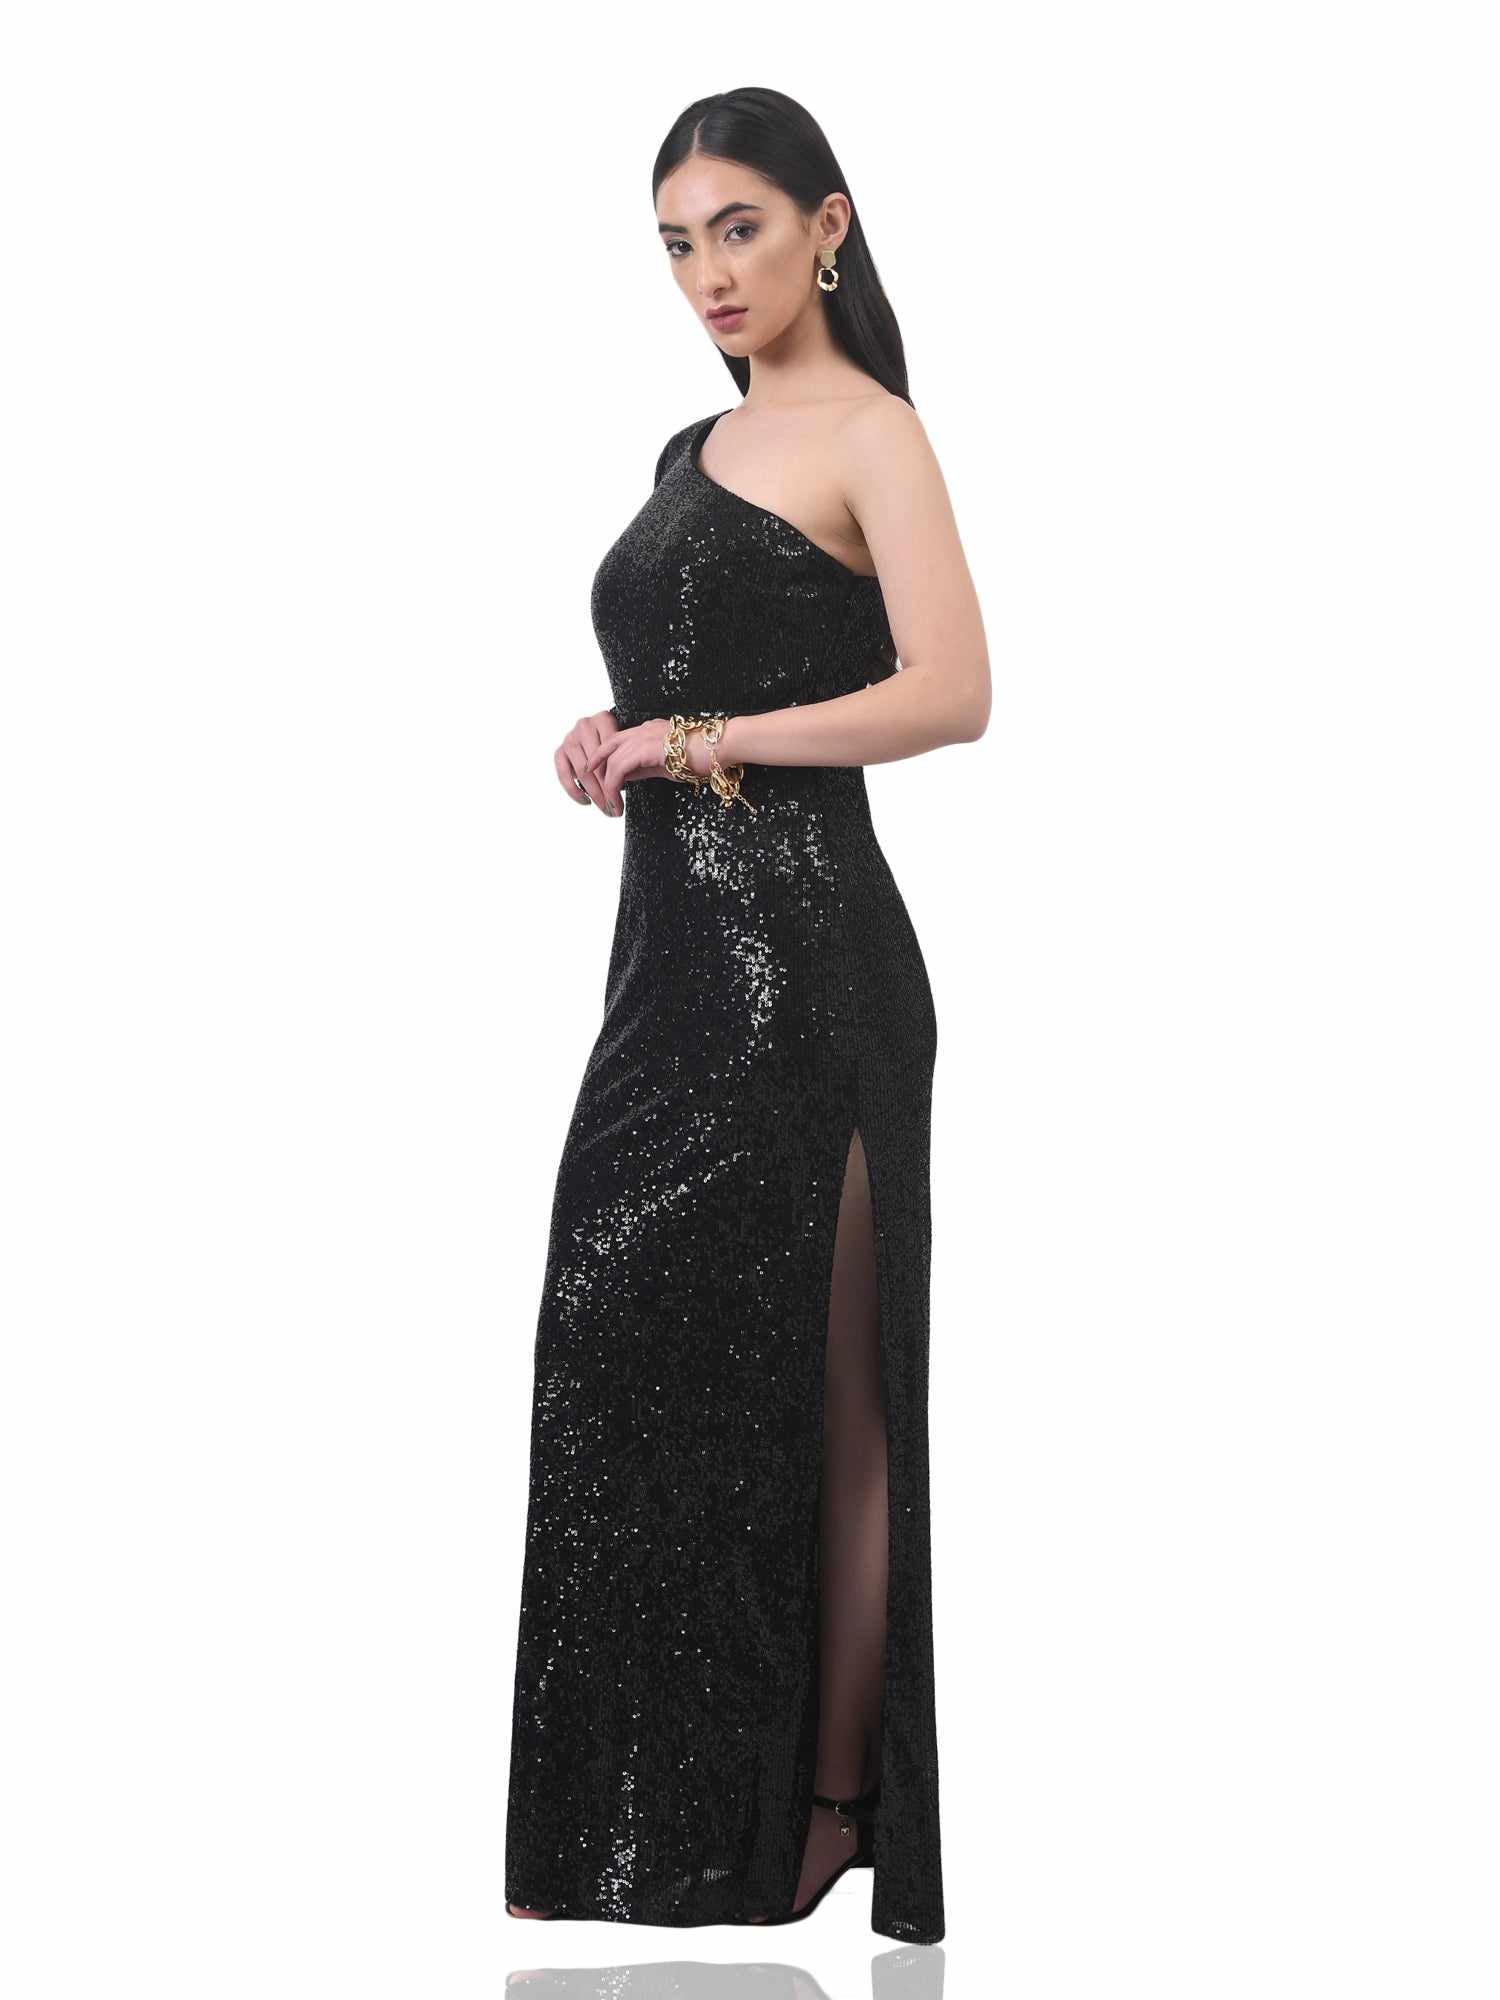 aceline black side slit gown